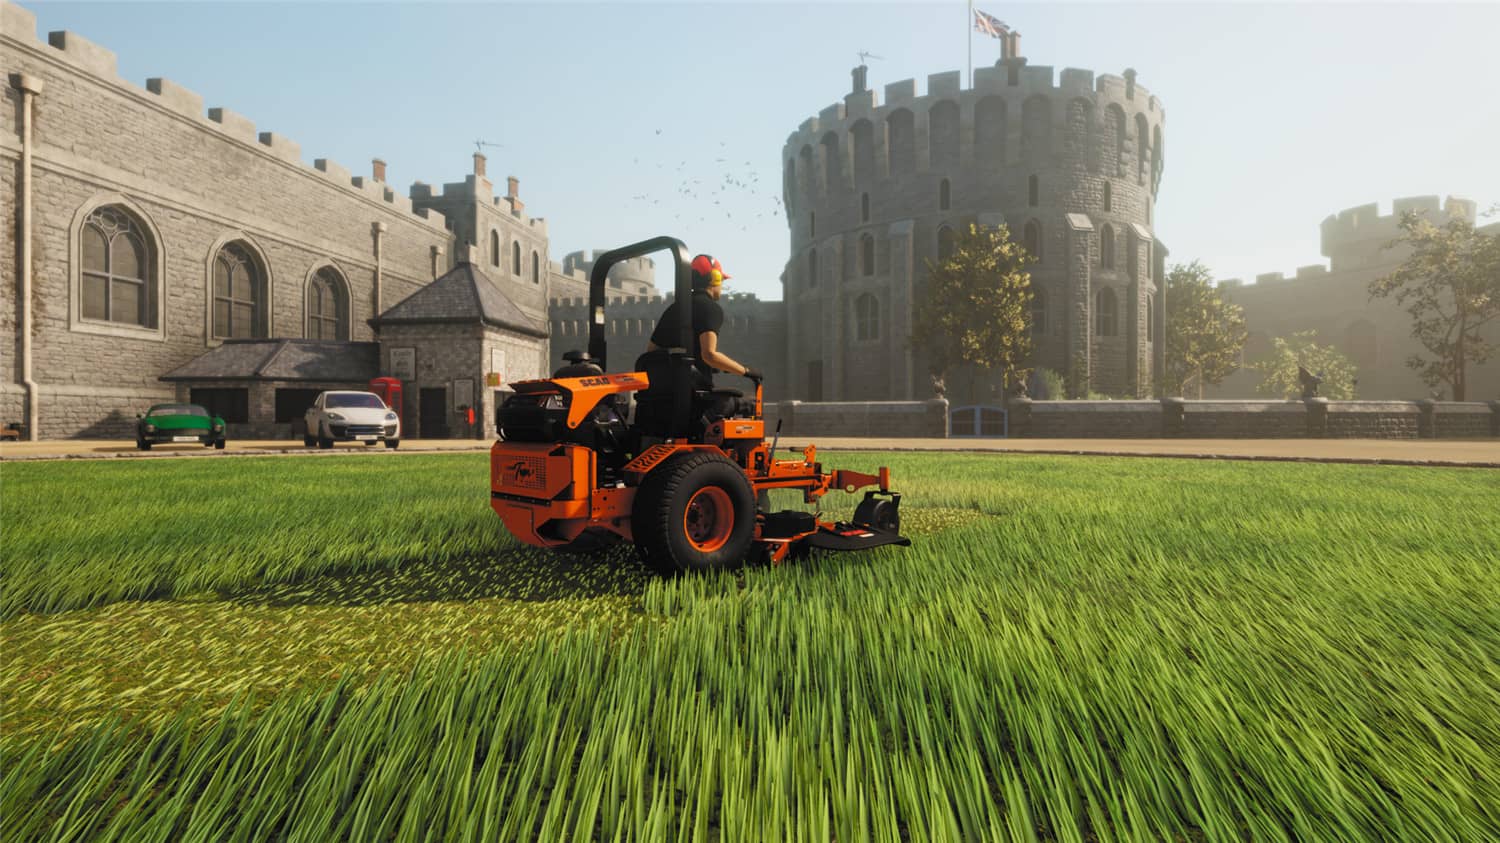 割草模拟器/Lawn Mowing Simulator插图9